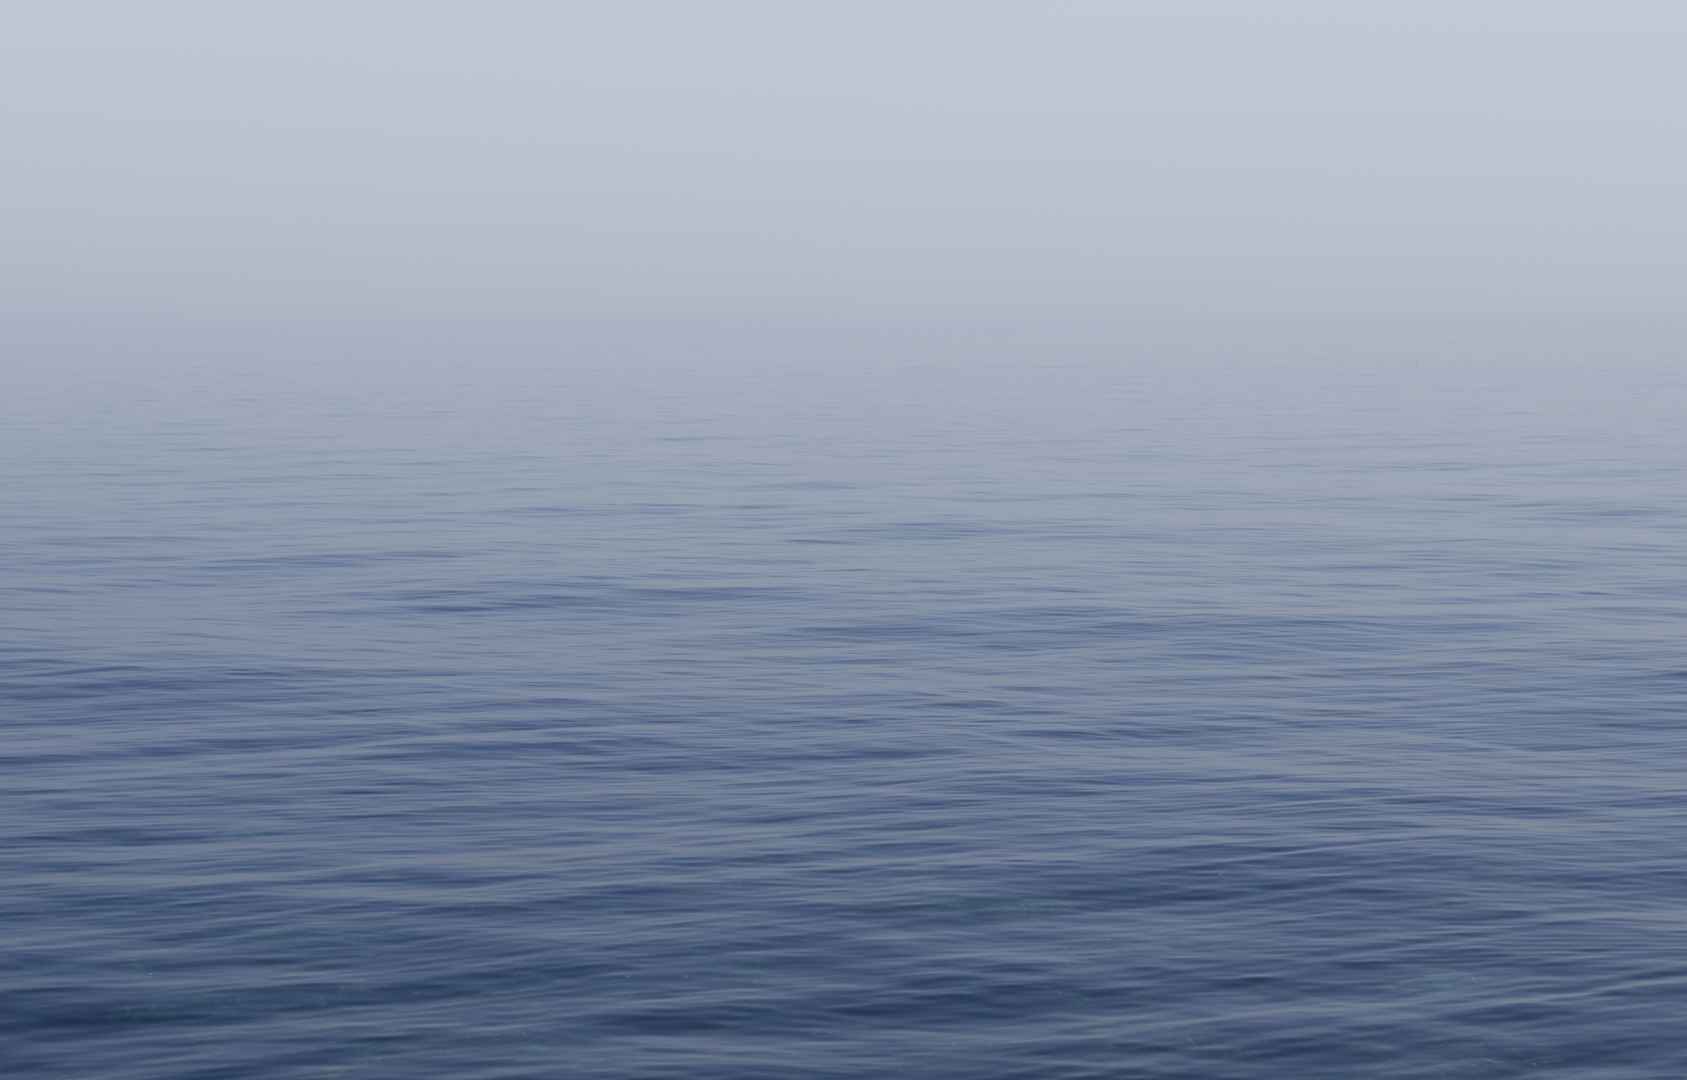 寂静的大海高清实景图片